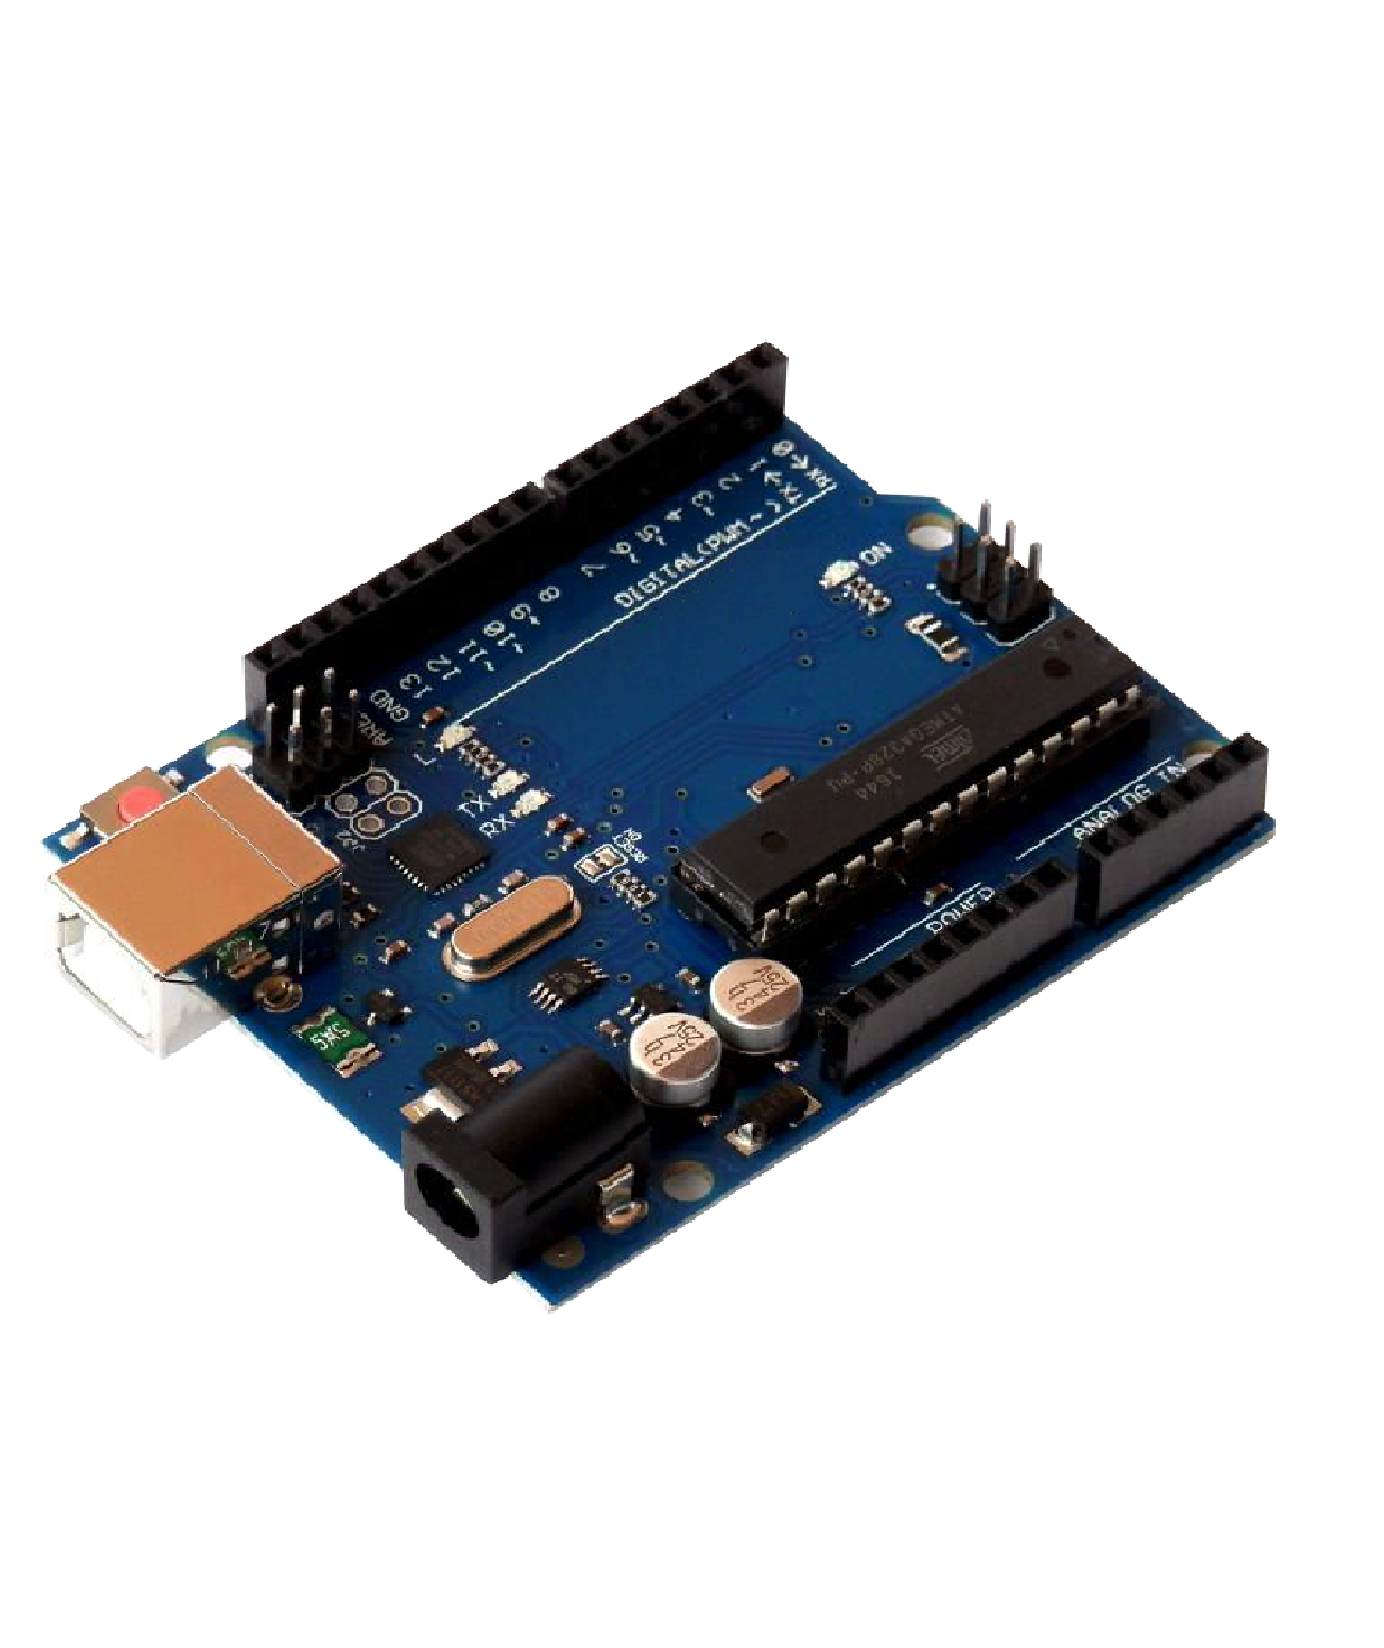 Get an Arduino UNO Starter Kit for Just $20 - Maker Advisor